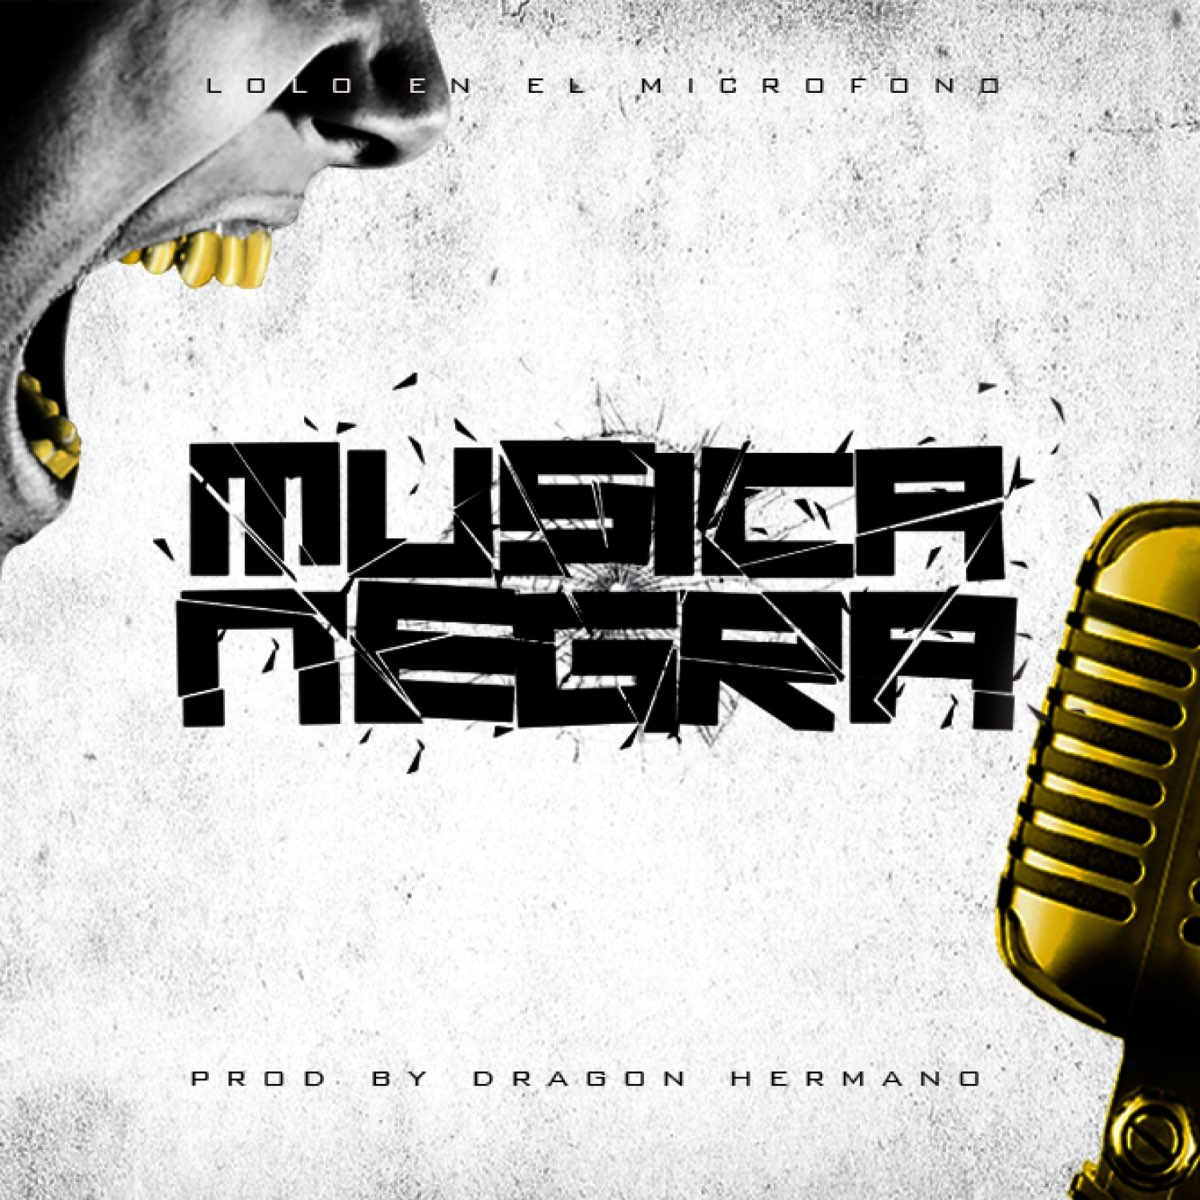 Factor malo Aeródromo resistirse Musica Negra - Single by Lolo en el Microfono on Apple Music